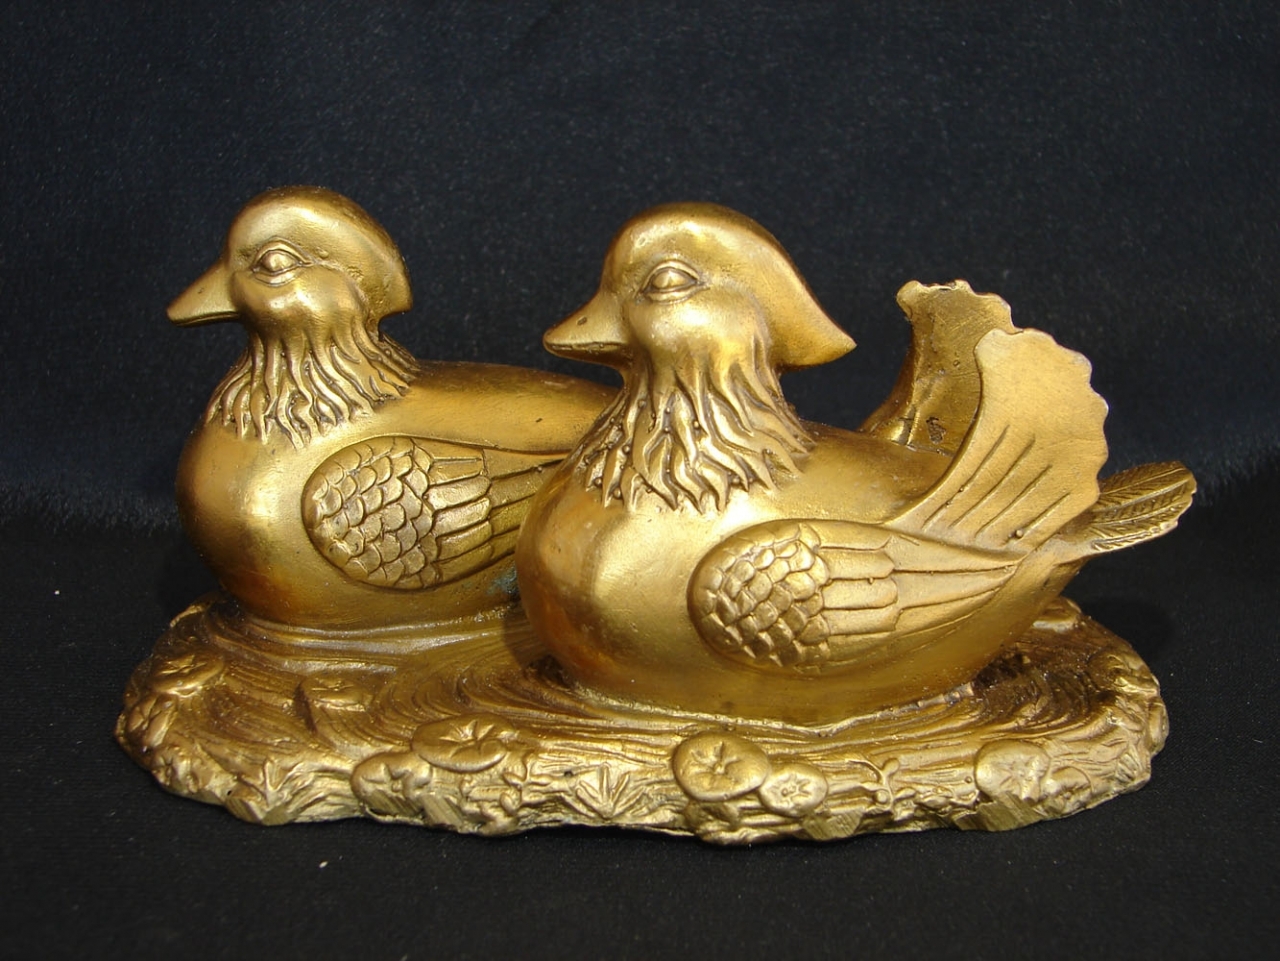 Brass Mandarin Ducks, Feng Shui Ducks, Love Birds1280 x 961